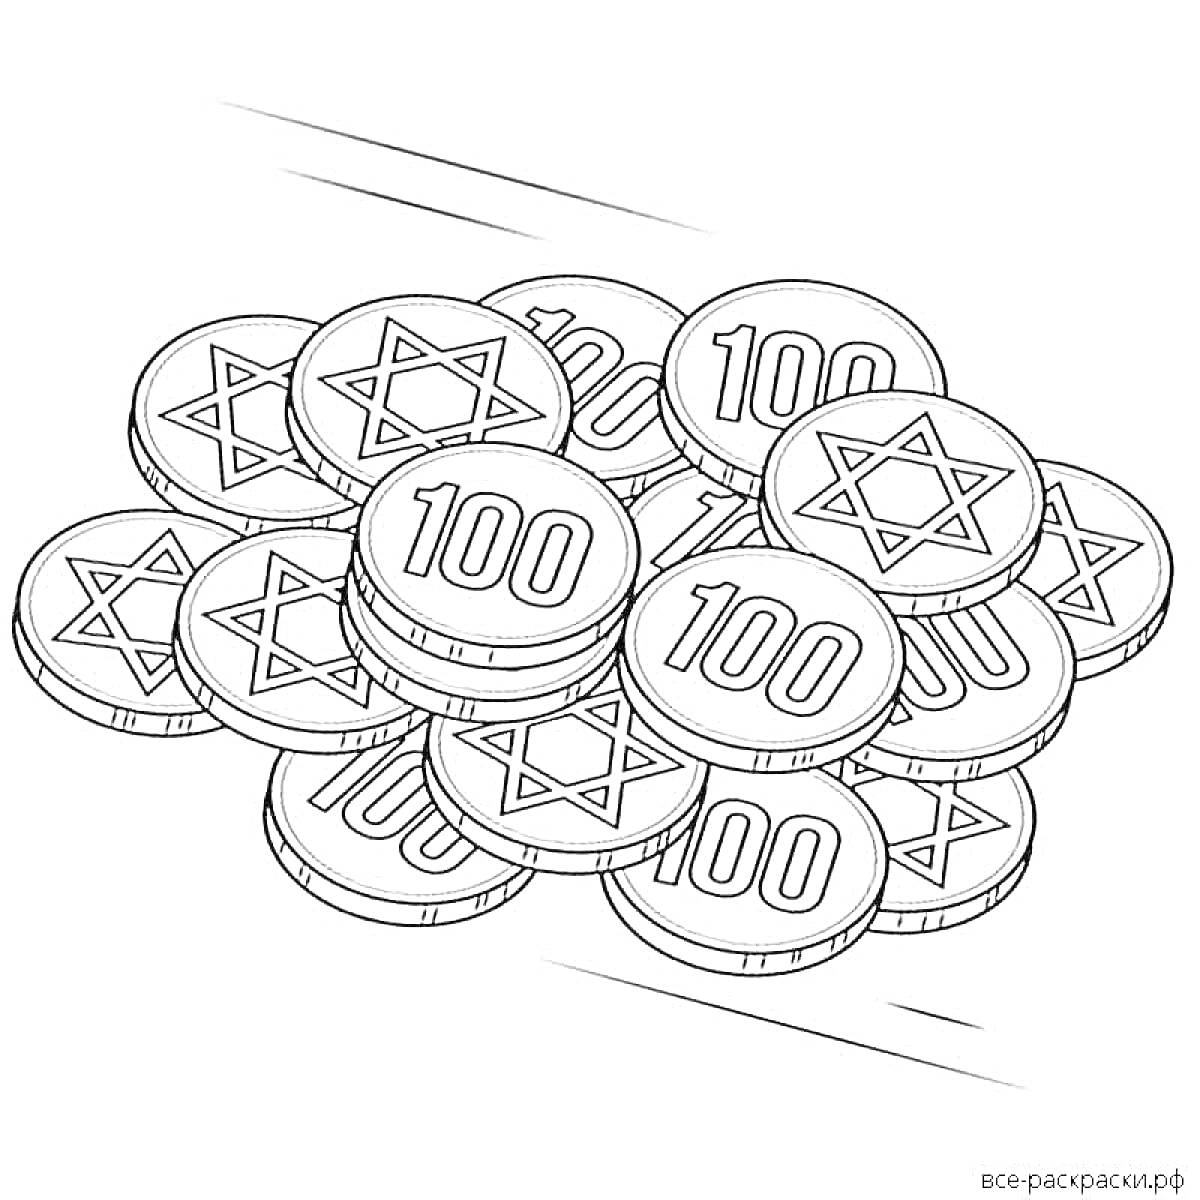 Раскраска монеты с цифрами 100 и звездами